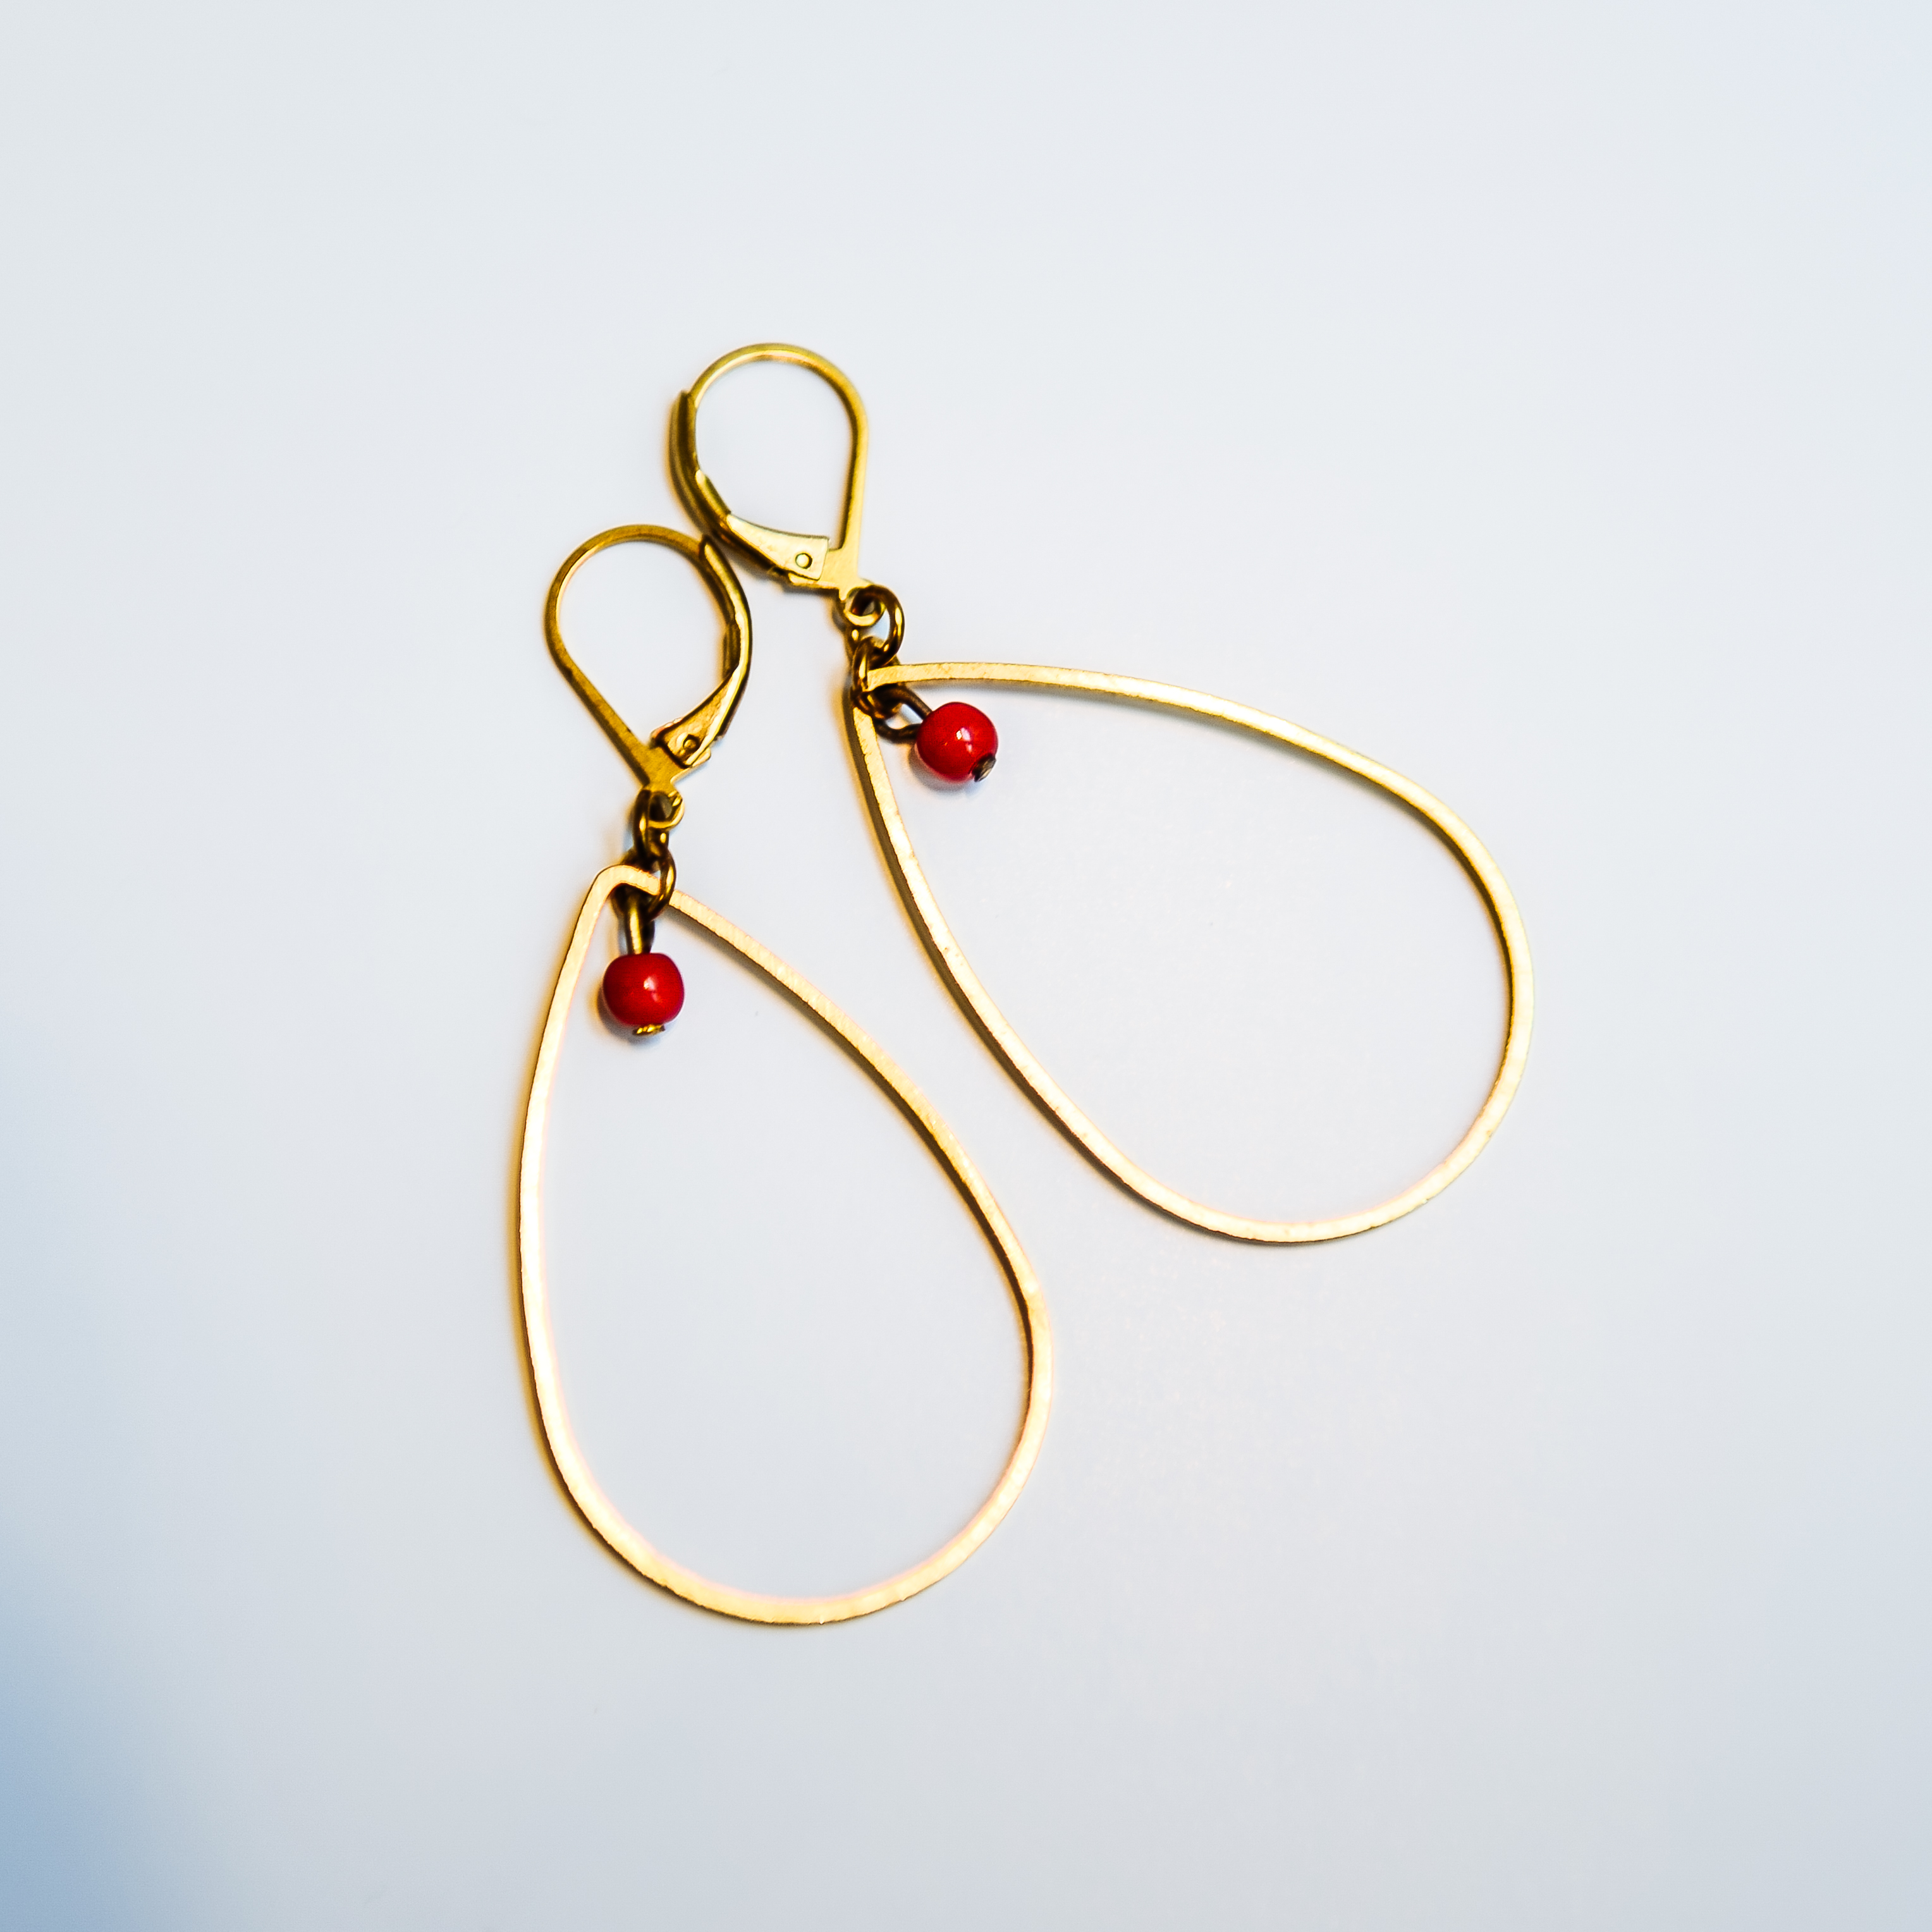 Boucles d'oreilles EOLE losange laiton doré et sa perle ronde en verre de couleur. Fermoir laiton. Existe en plusieurs coloris 